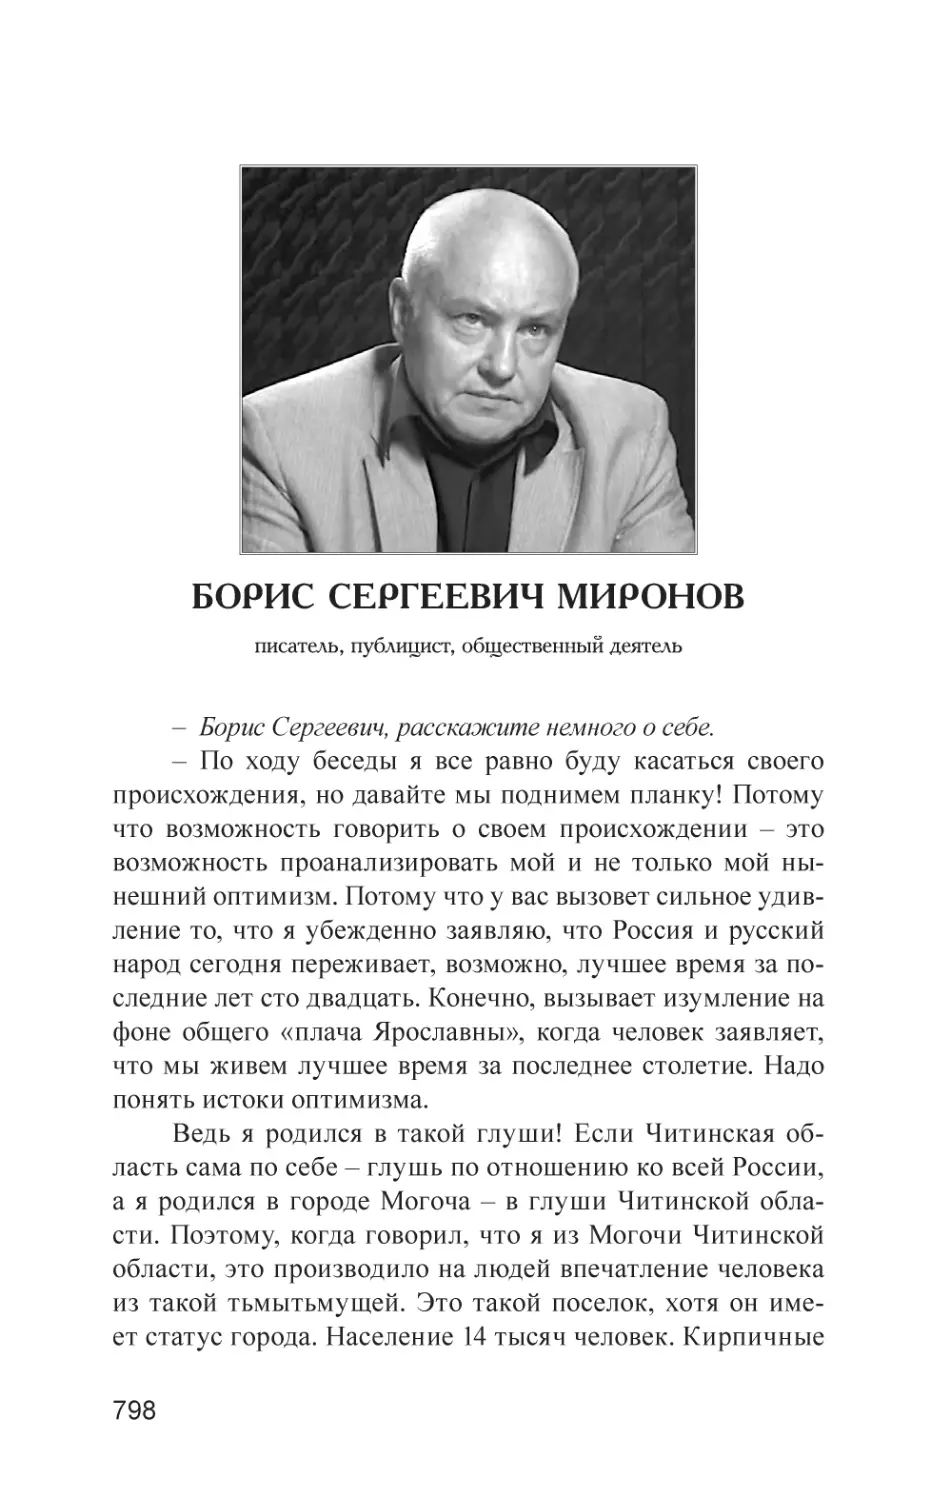 Борис Сергеевич Миронов